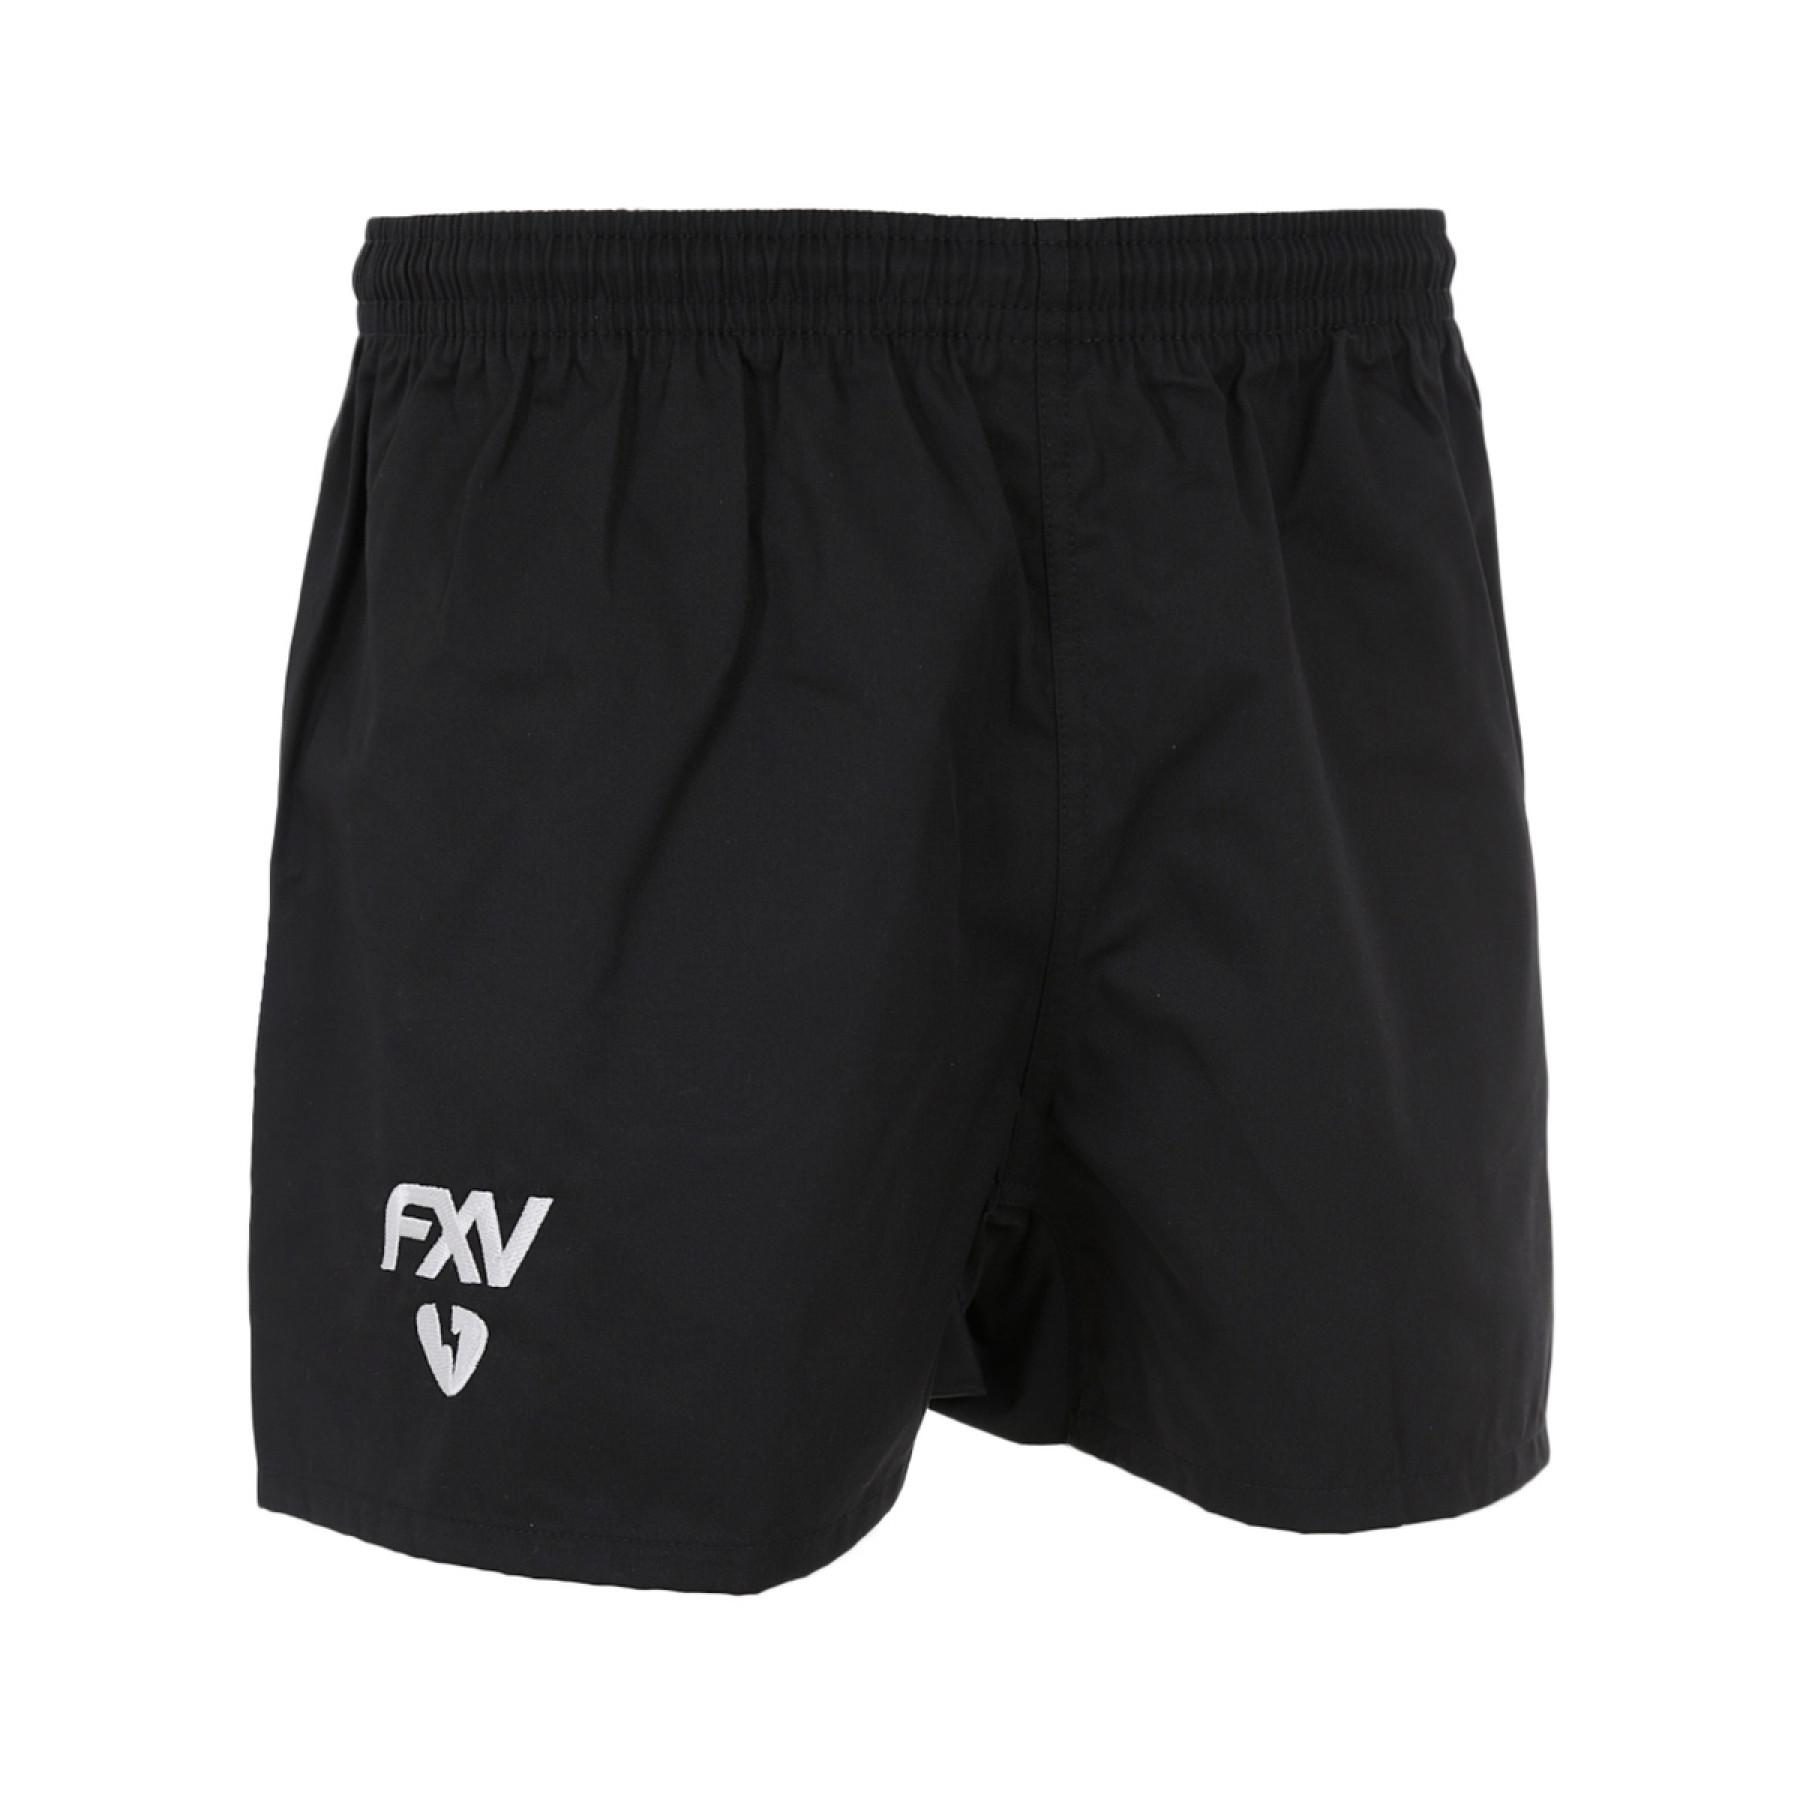 Children's shorts Force XV pixy